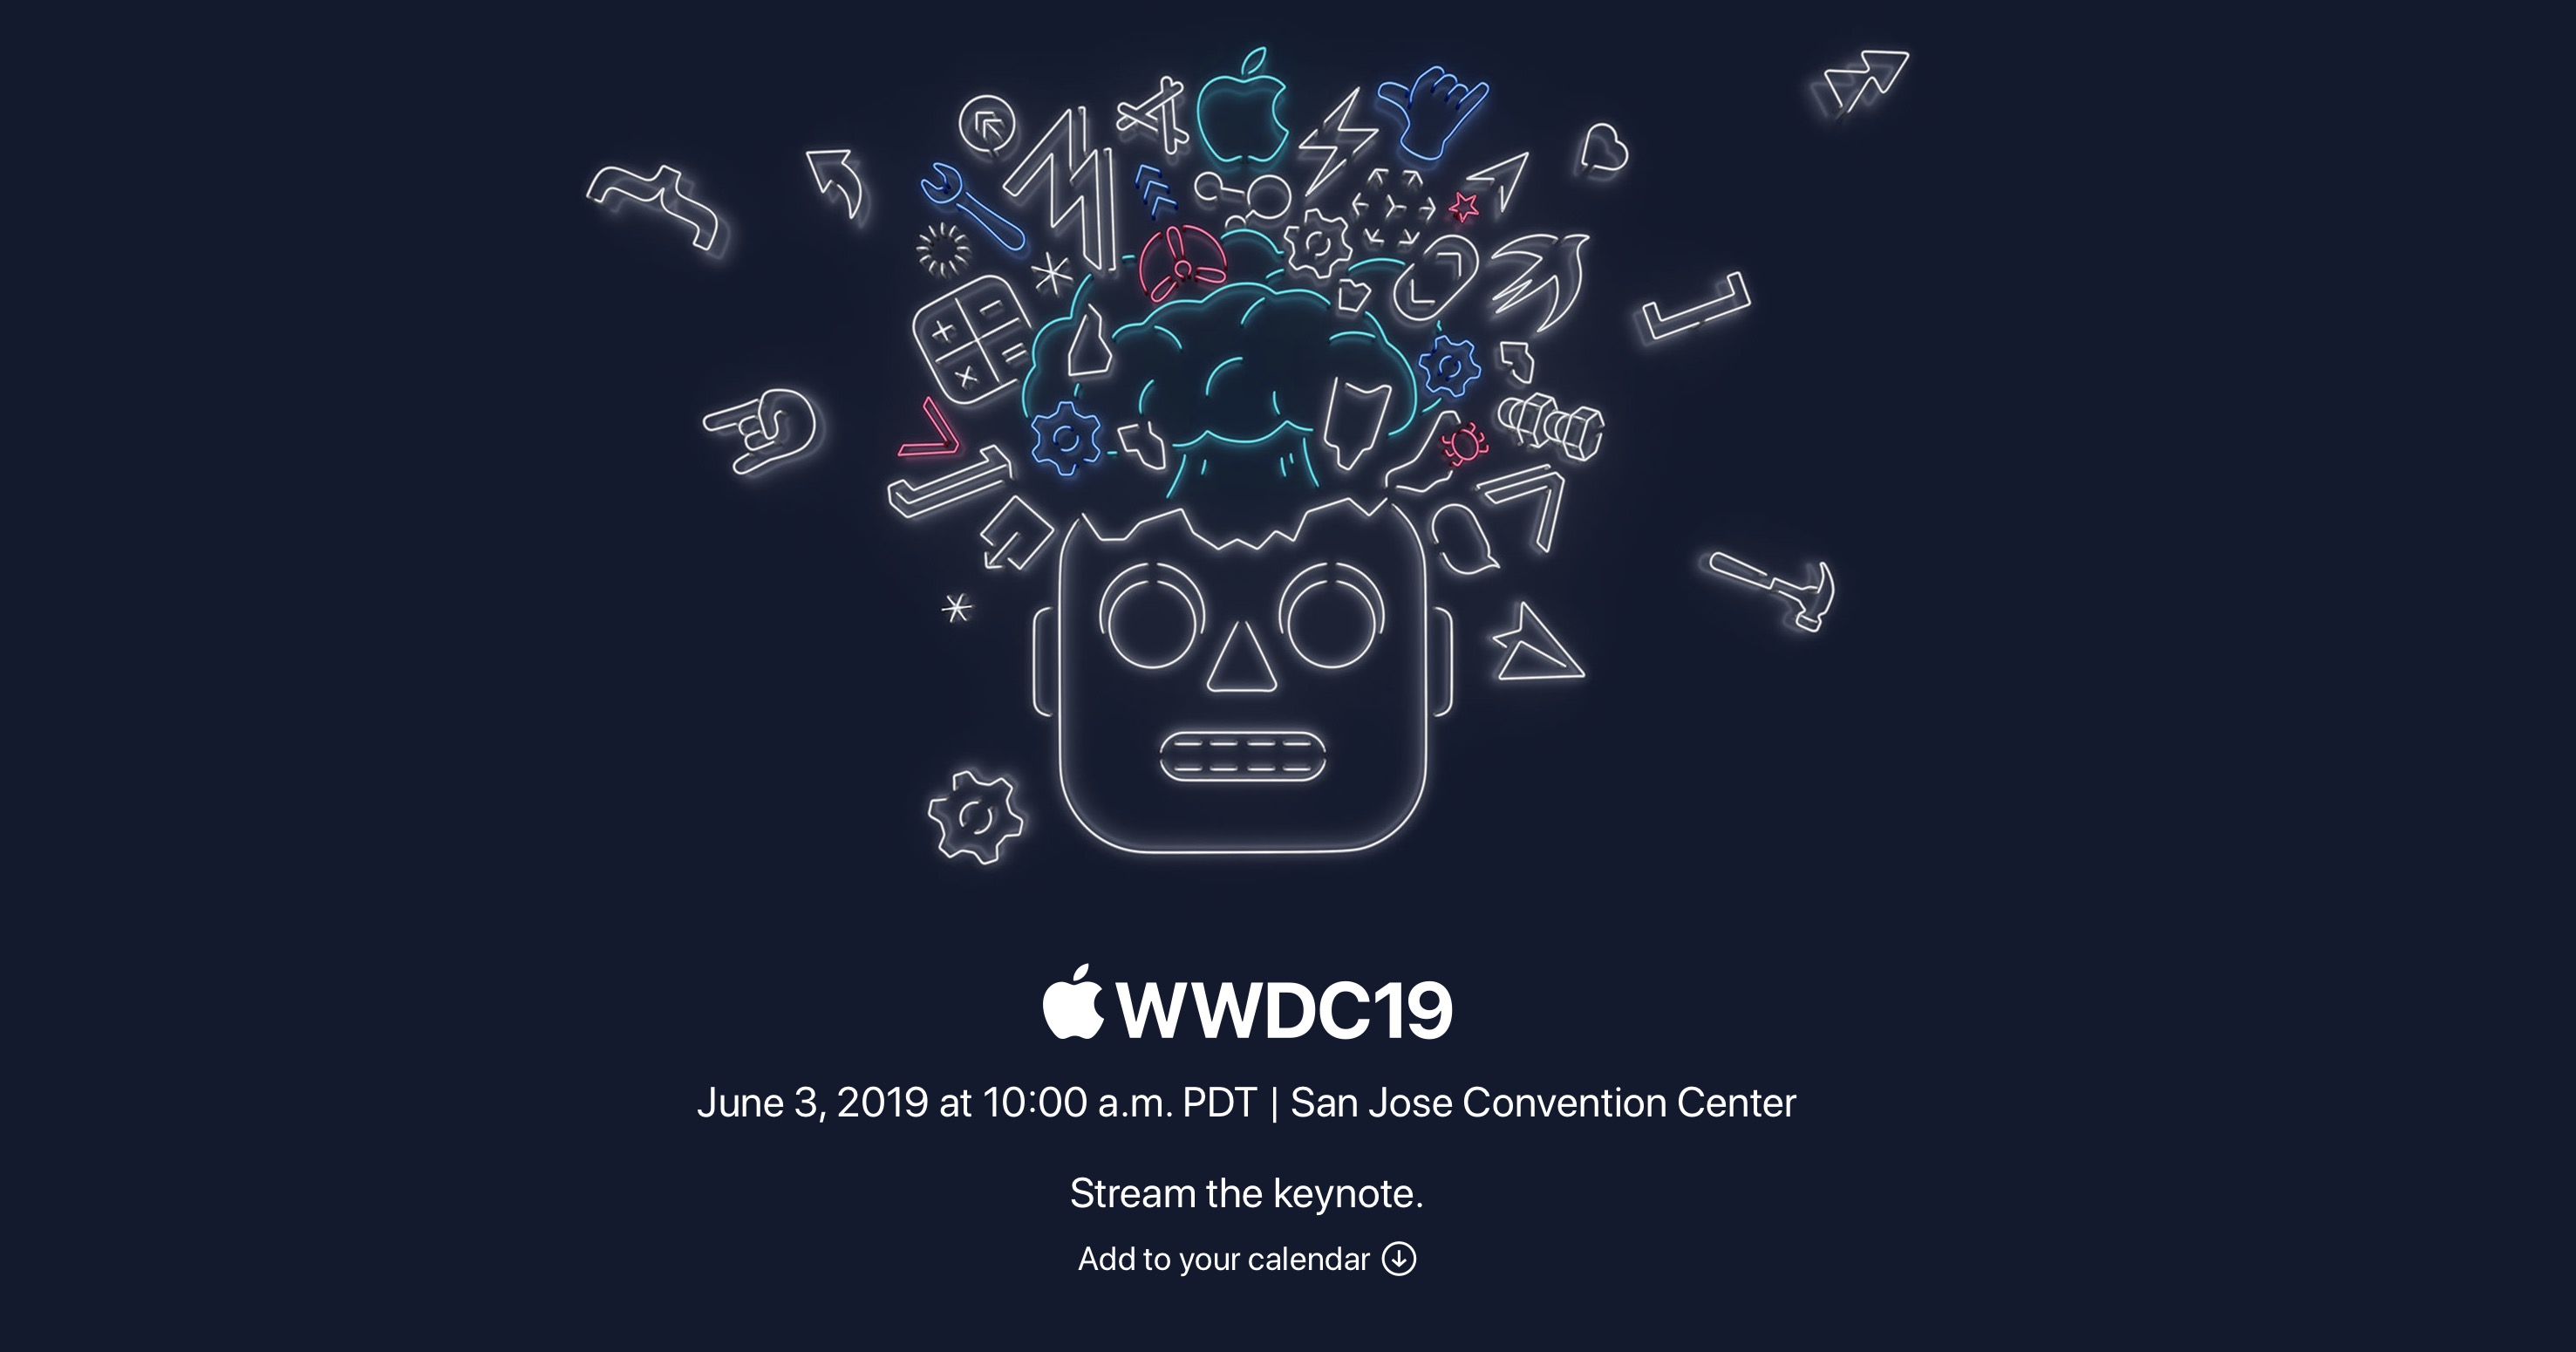 Hướng dẫn xem live sự kiện WWDC 2019 vào 12 đêm nay 4/6, iOS, macOS mới, có thể có Mac Pro mới